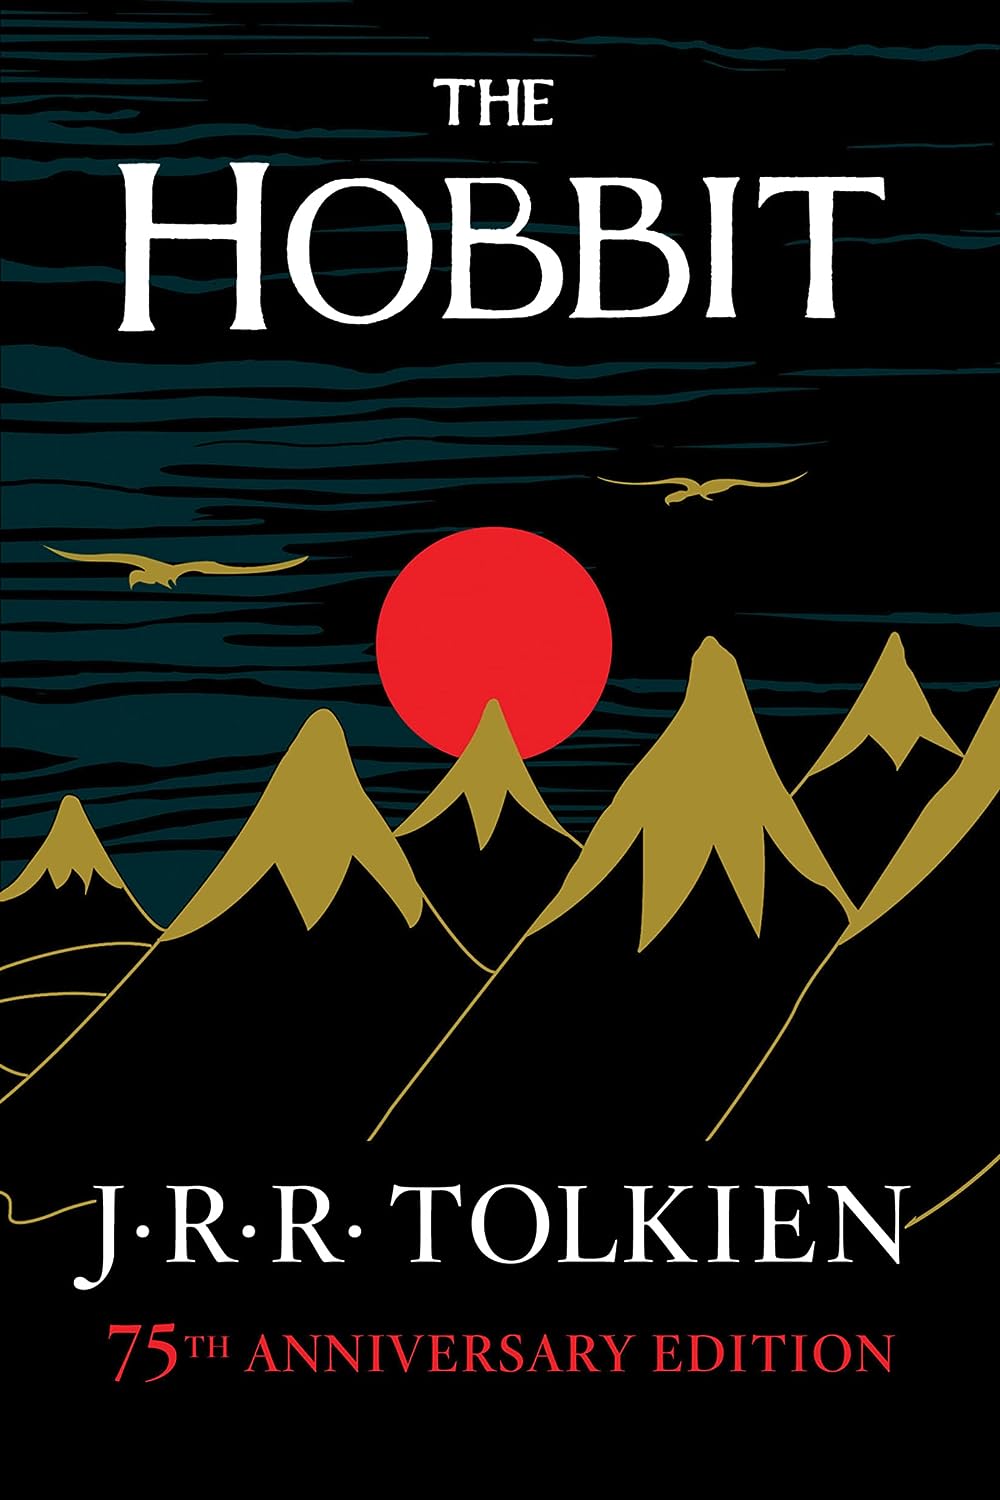 “The Hobbit” by J.R.R. Tolkein